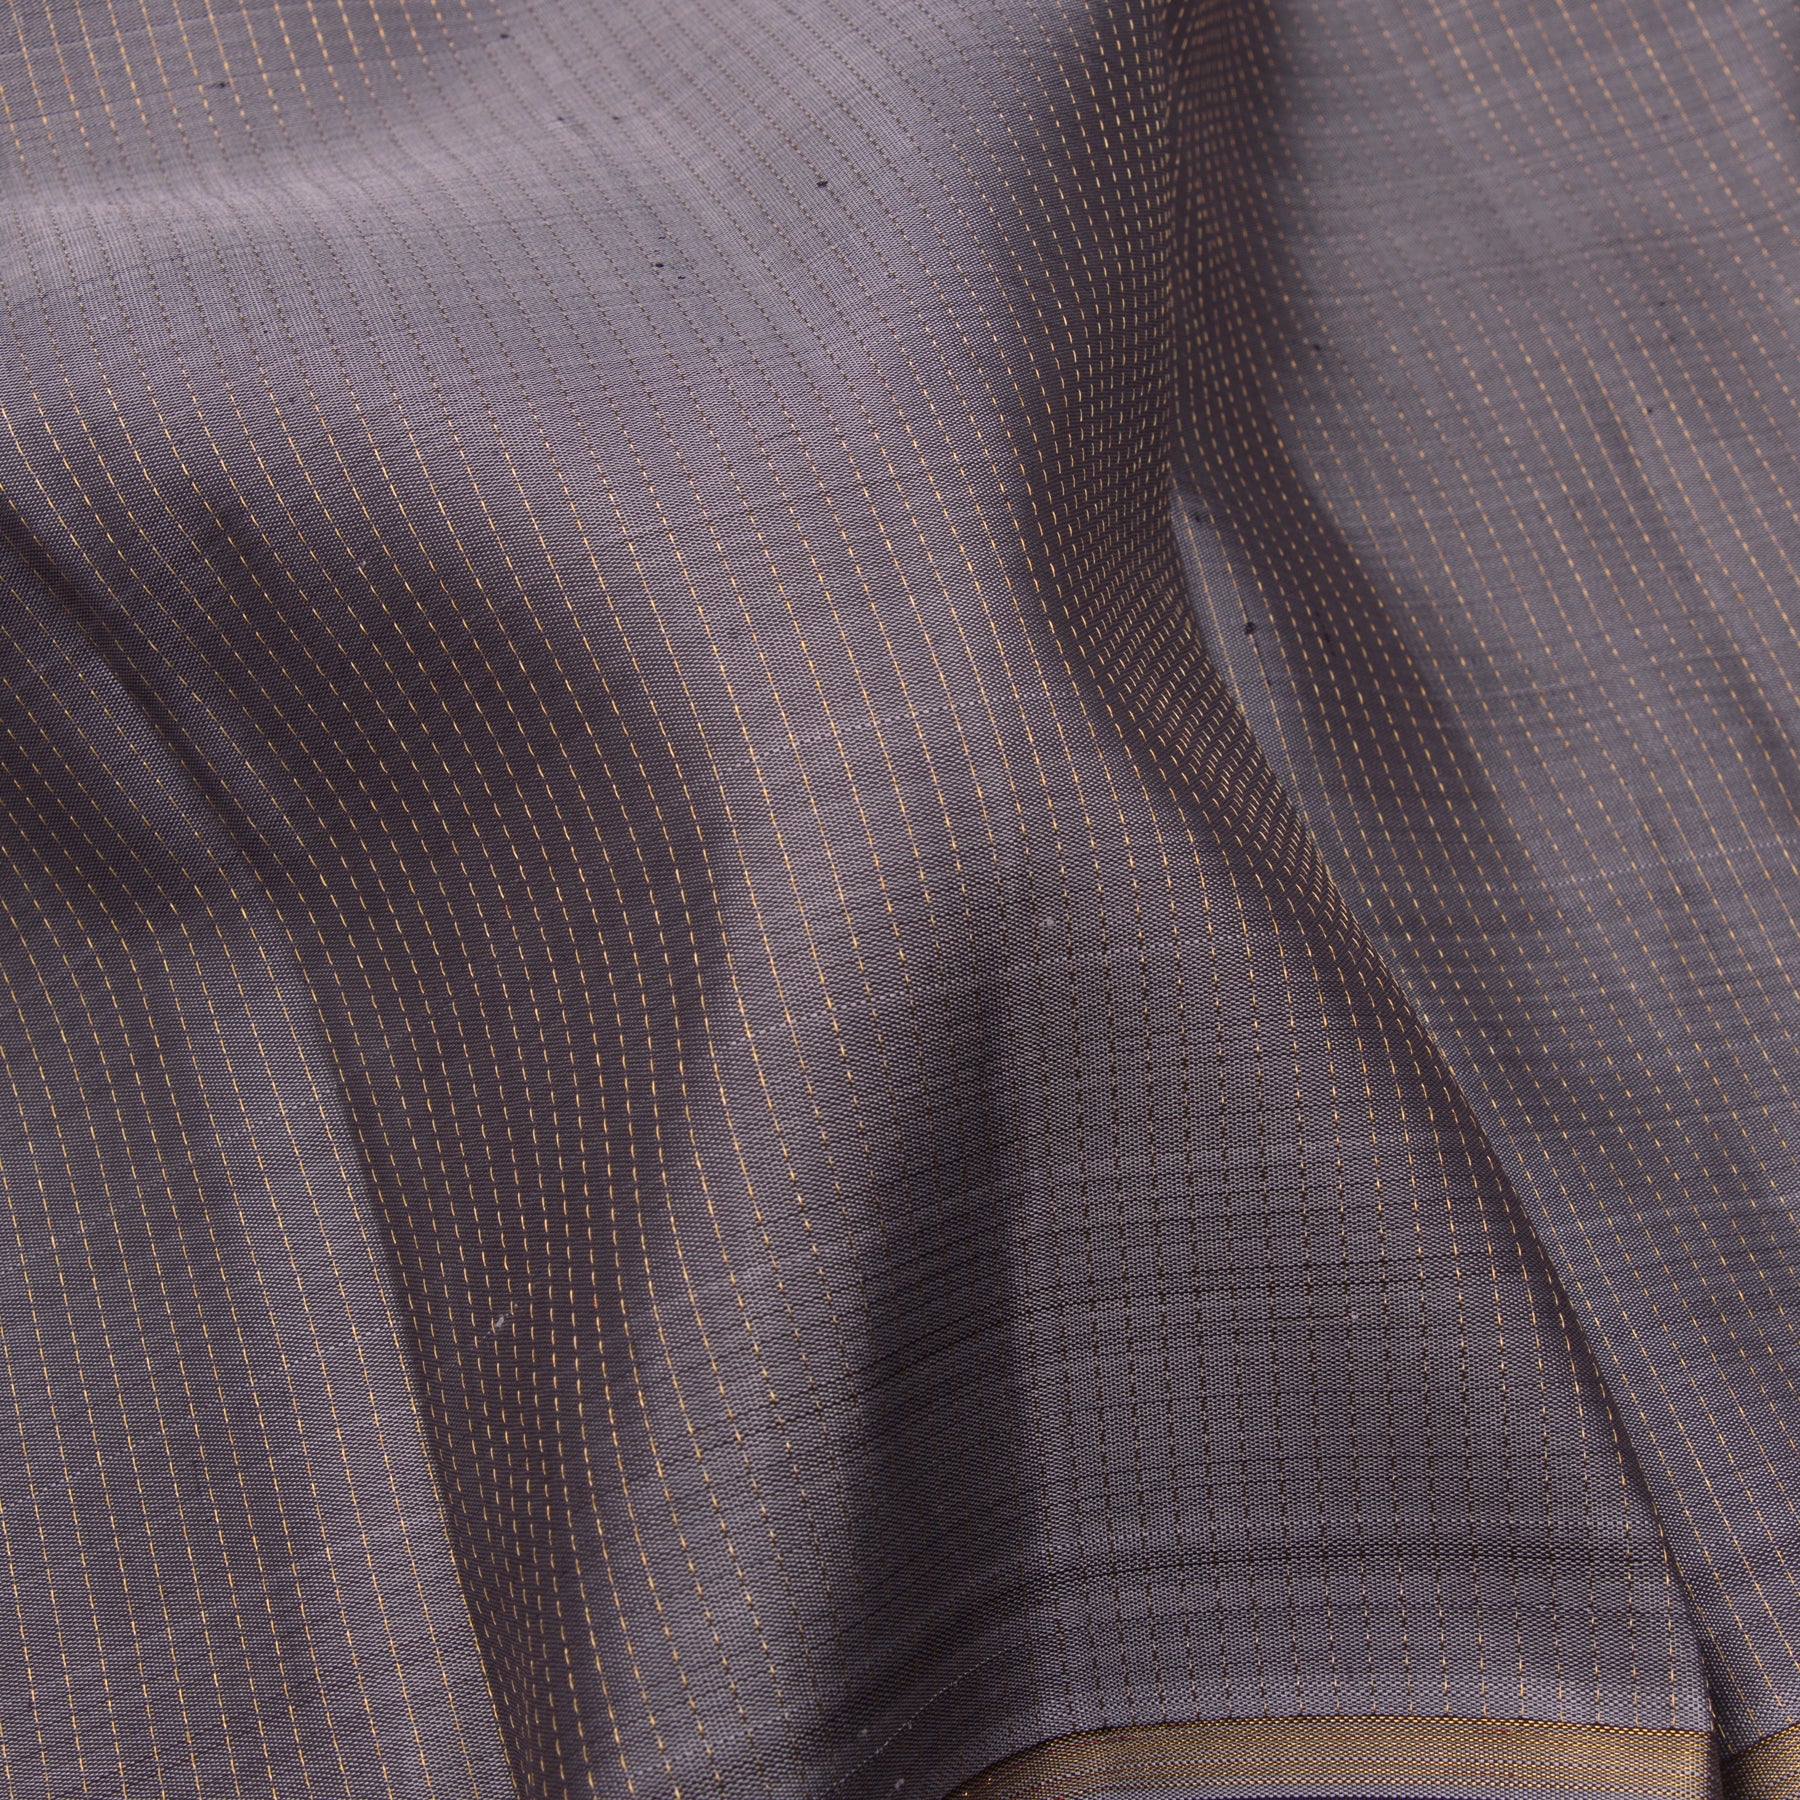 Kanakavalli Kanjivaram Silk Sari 23-599-HS001-05159 - Fabric View